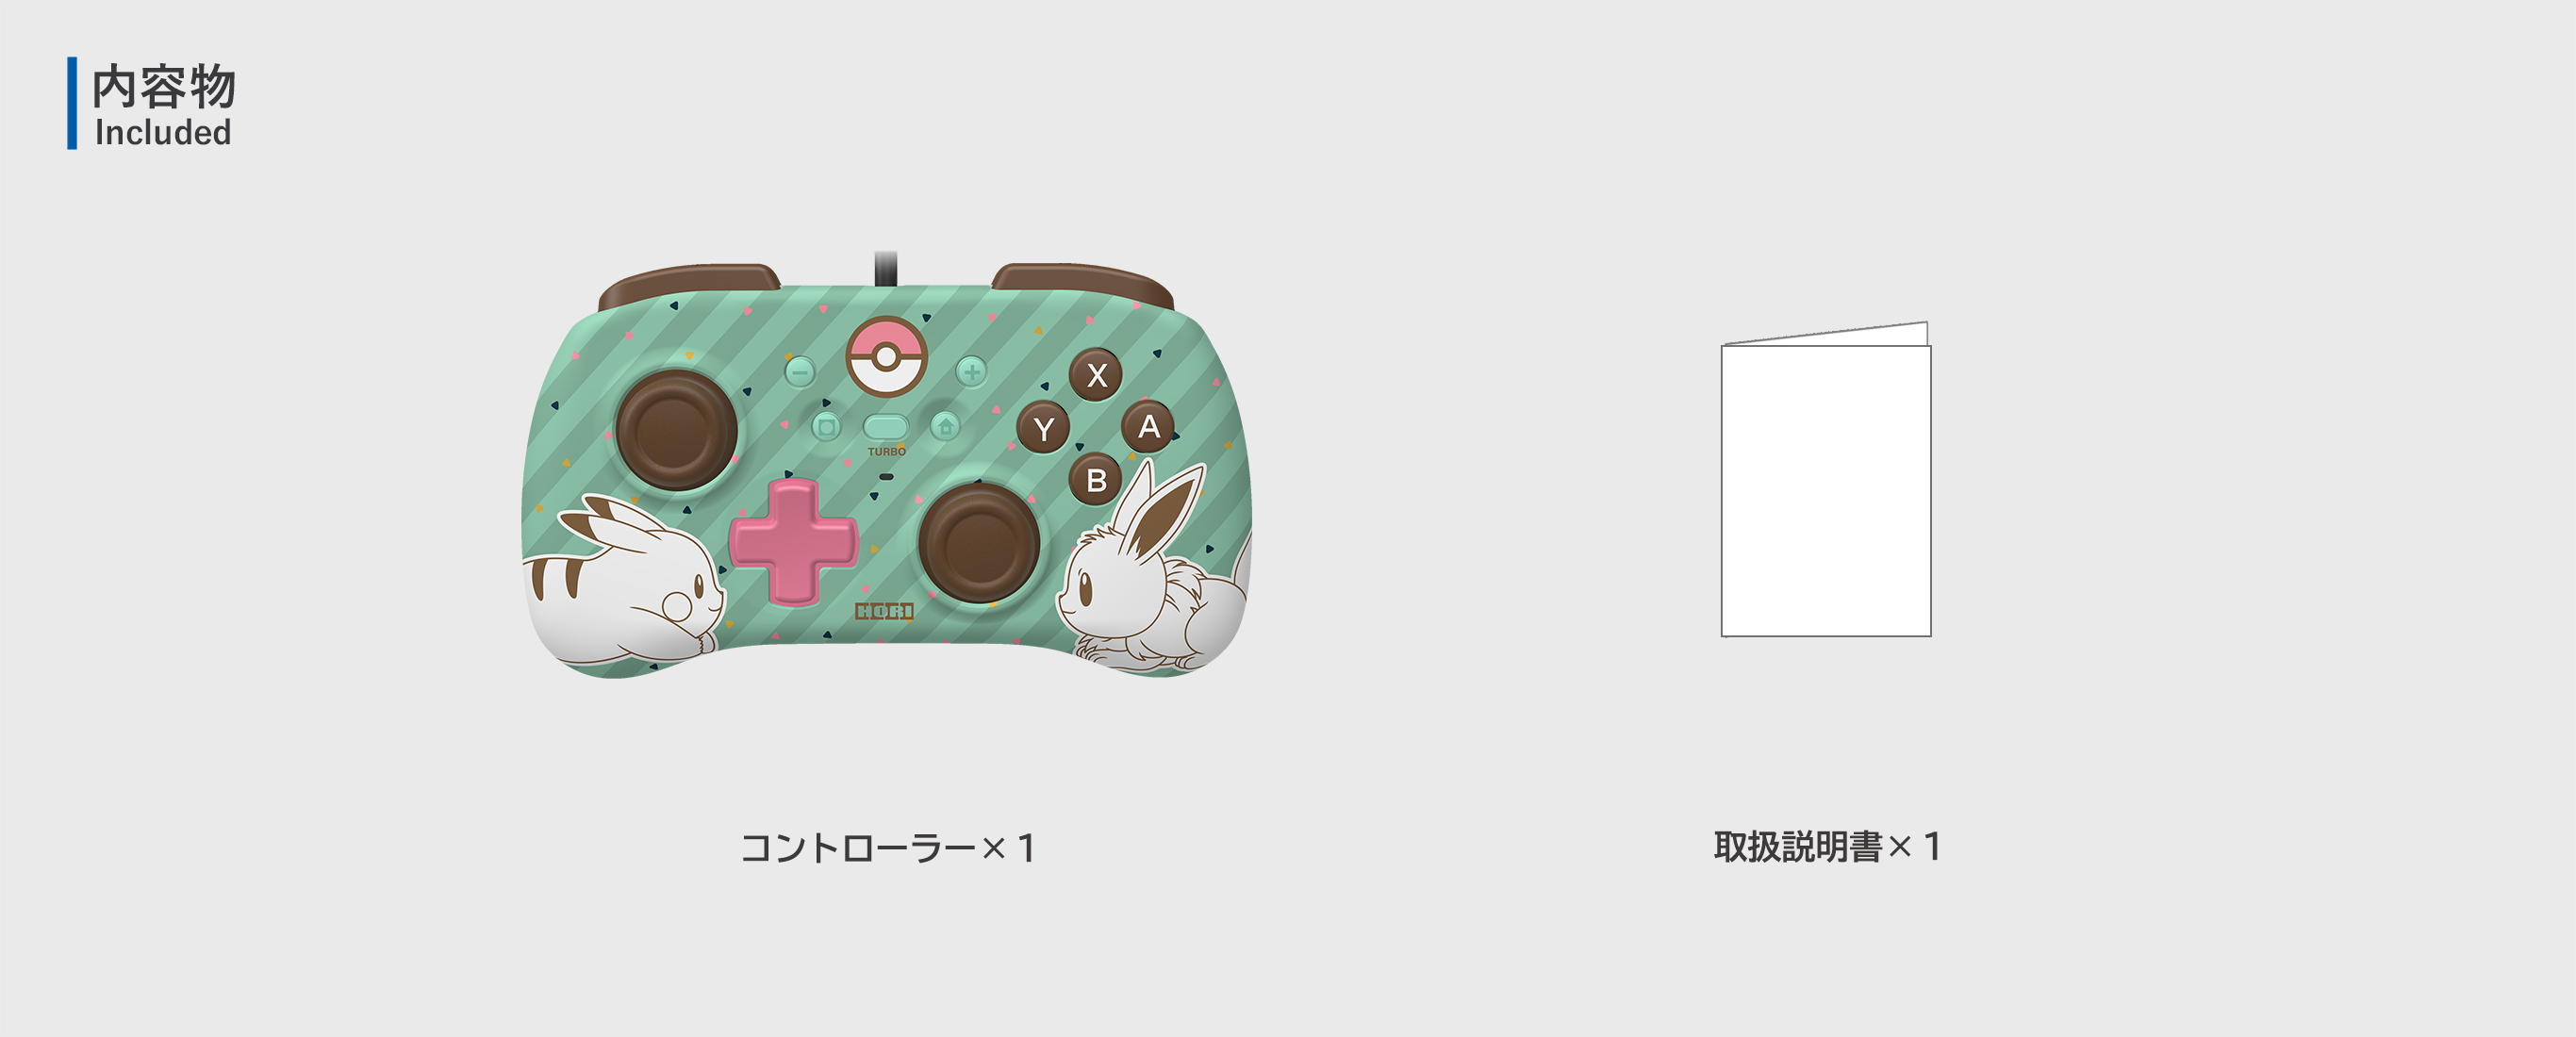 株式会社 HORI | ホリパッド ミニ for Nintendo Switch ピカチュウ 